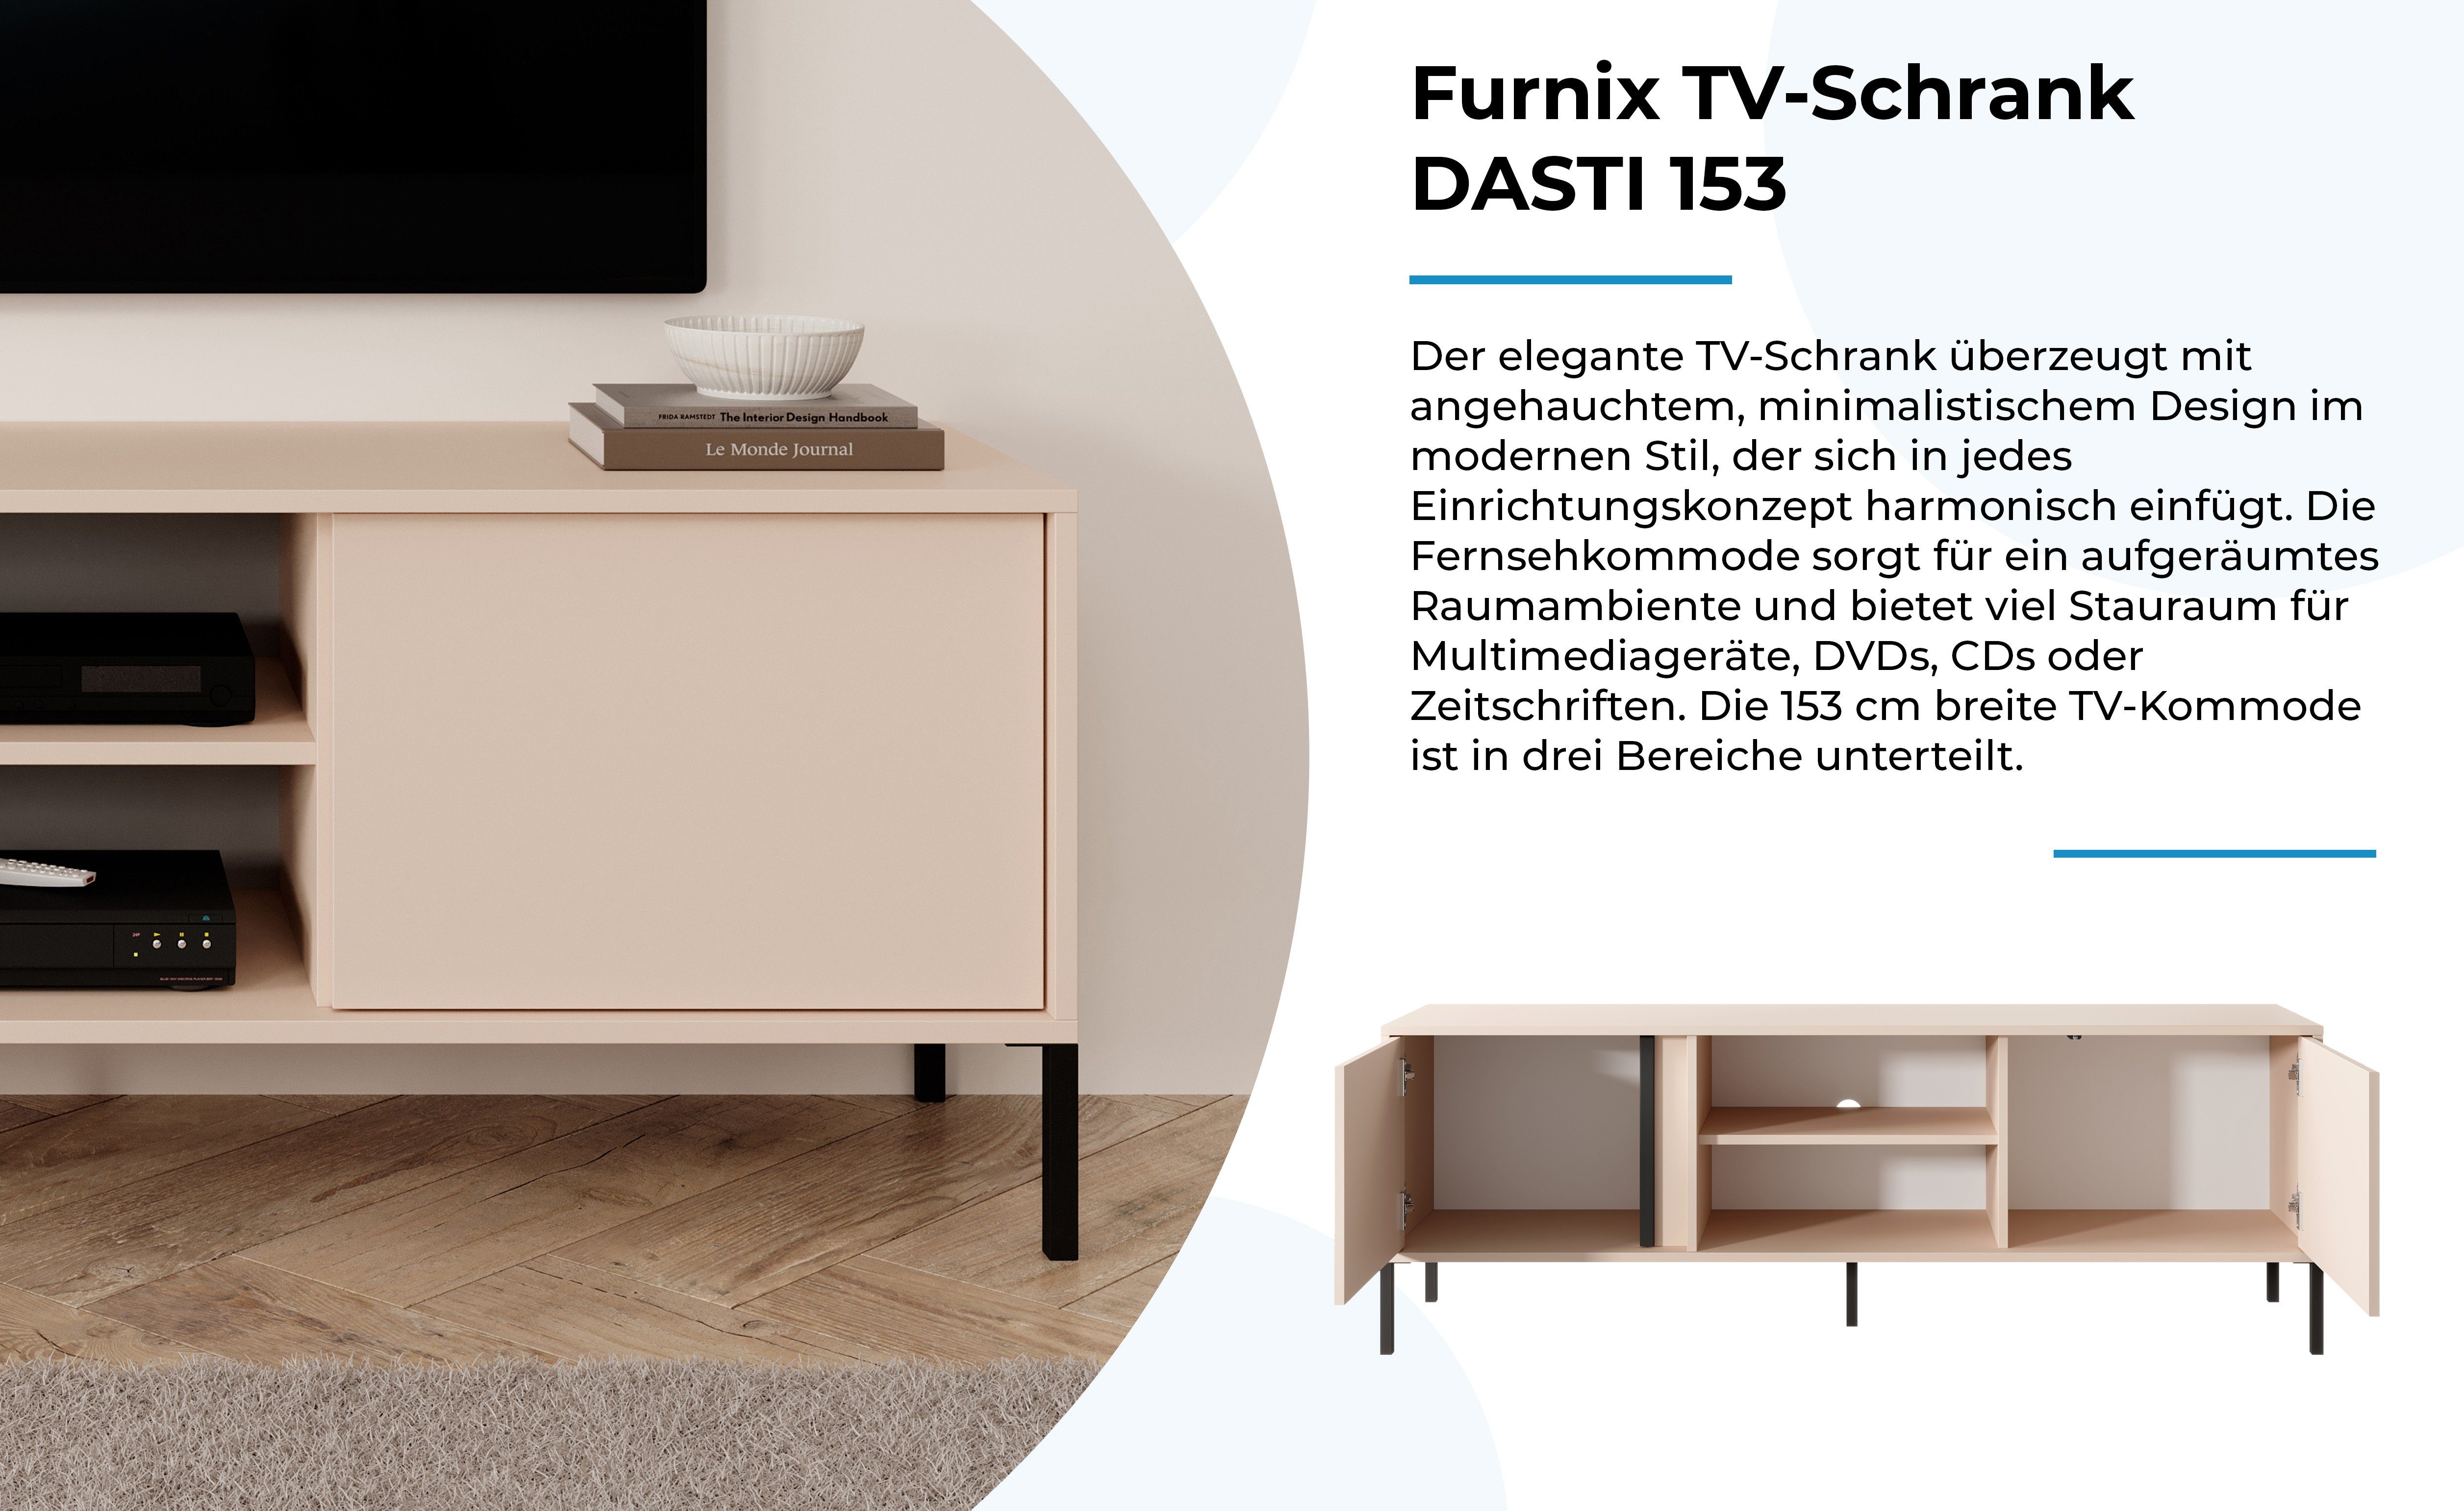 Made x Metallfüßen B153,1 153 T39,5 DASTI Türen Furnix EU TV-Schrank Beige Fernsehschrank mit und cm, in x H53,4